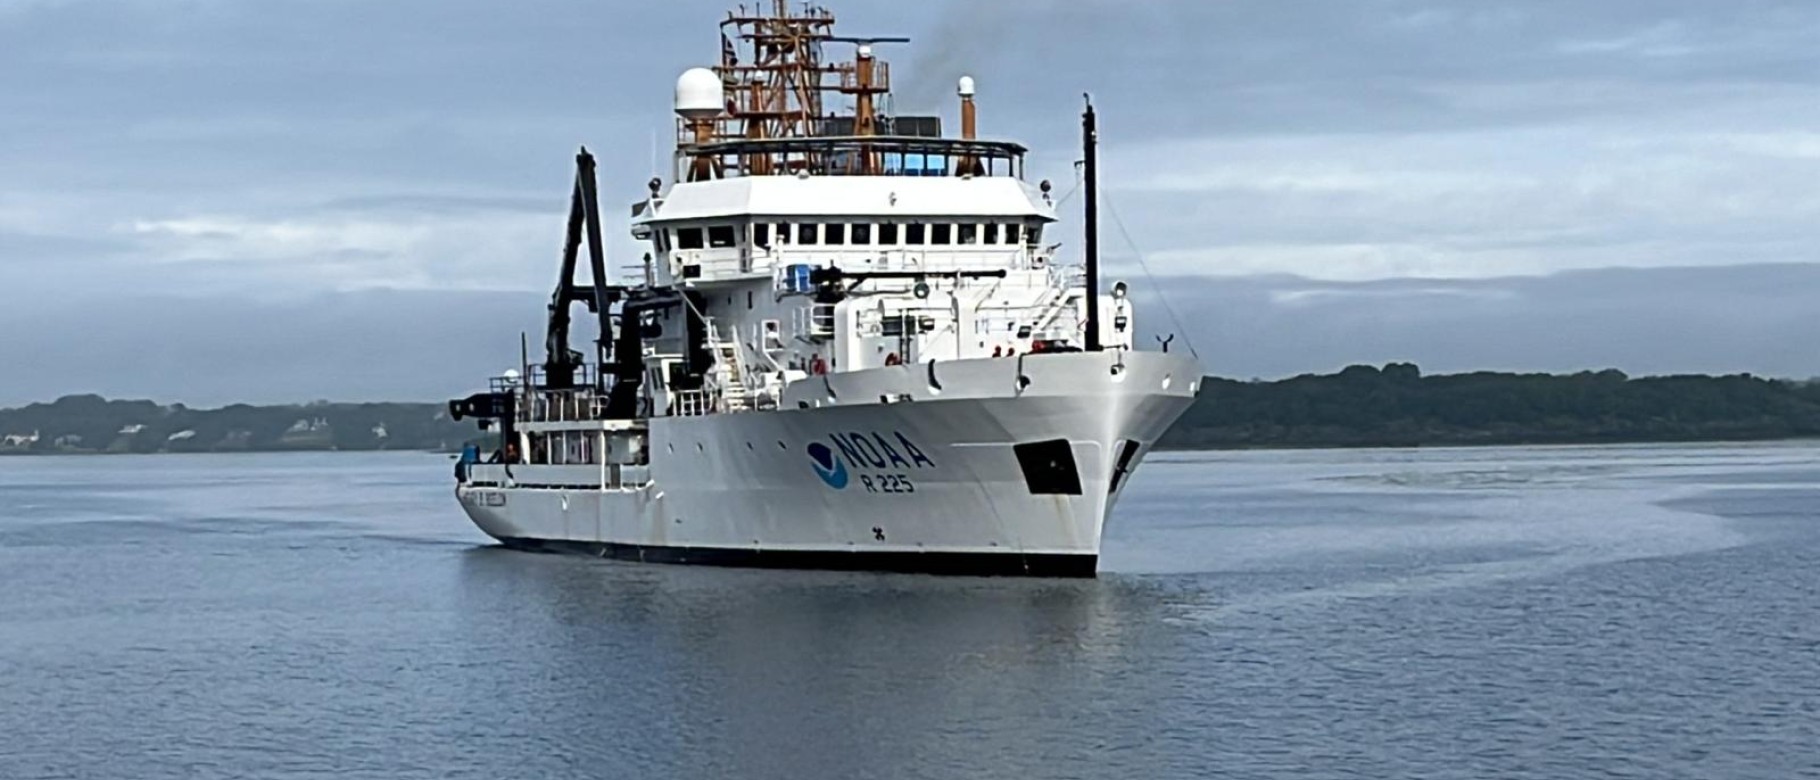 NOAA research vessel Henry B. Bigelow pulling into dock